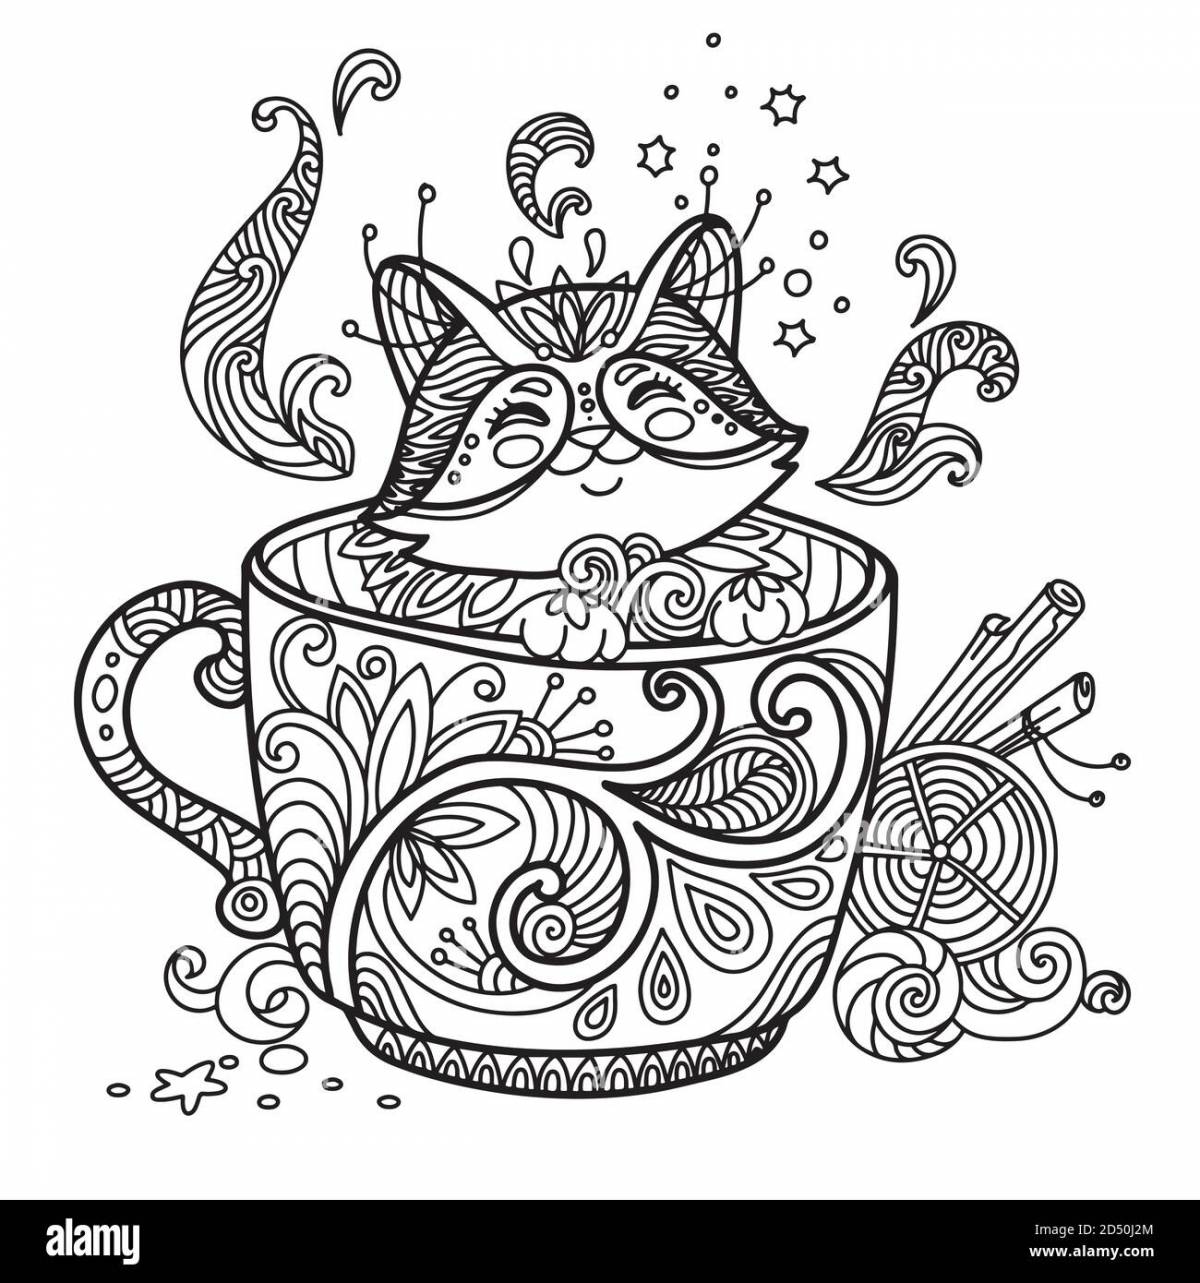 Раскраска антистресс котик в чашке